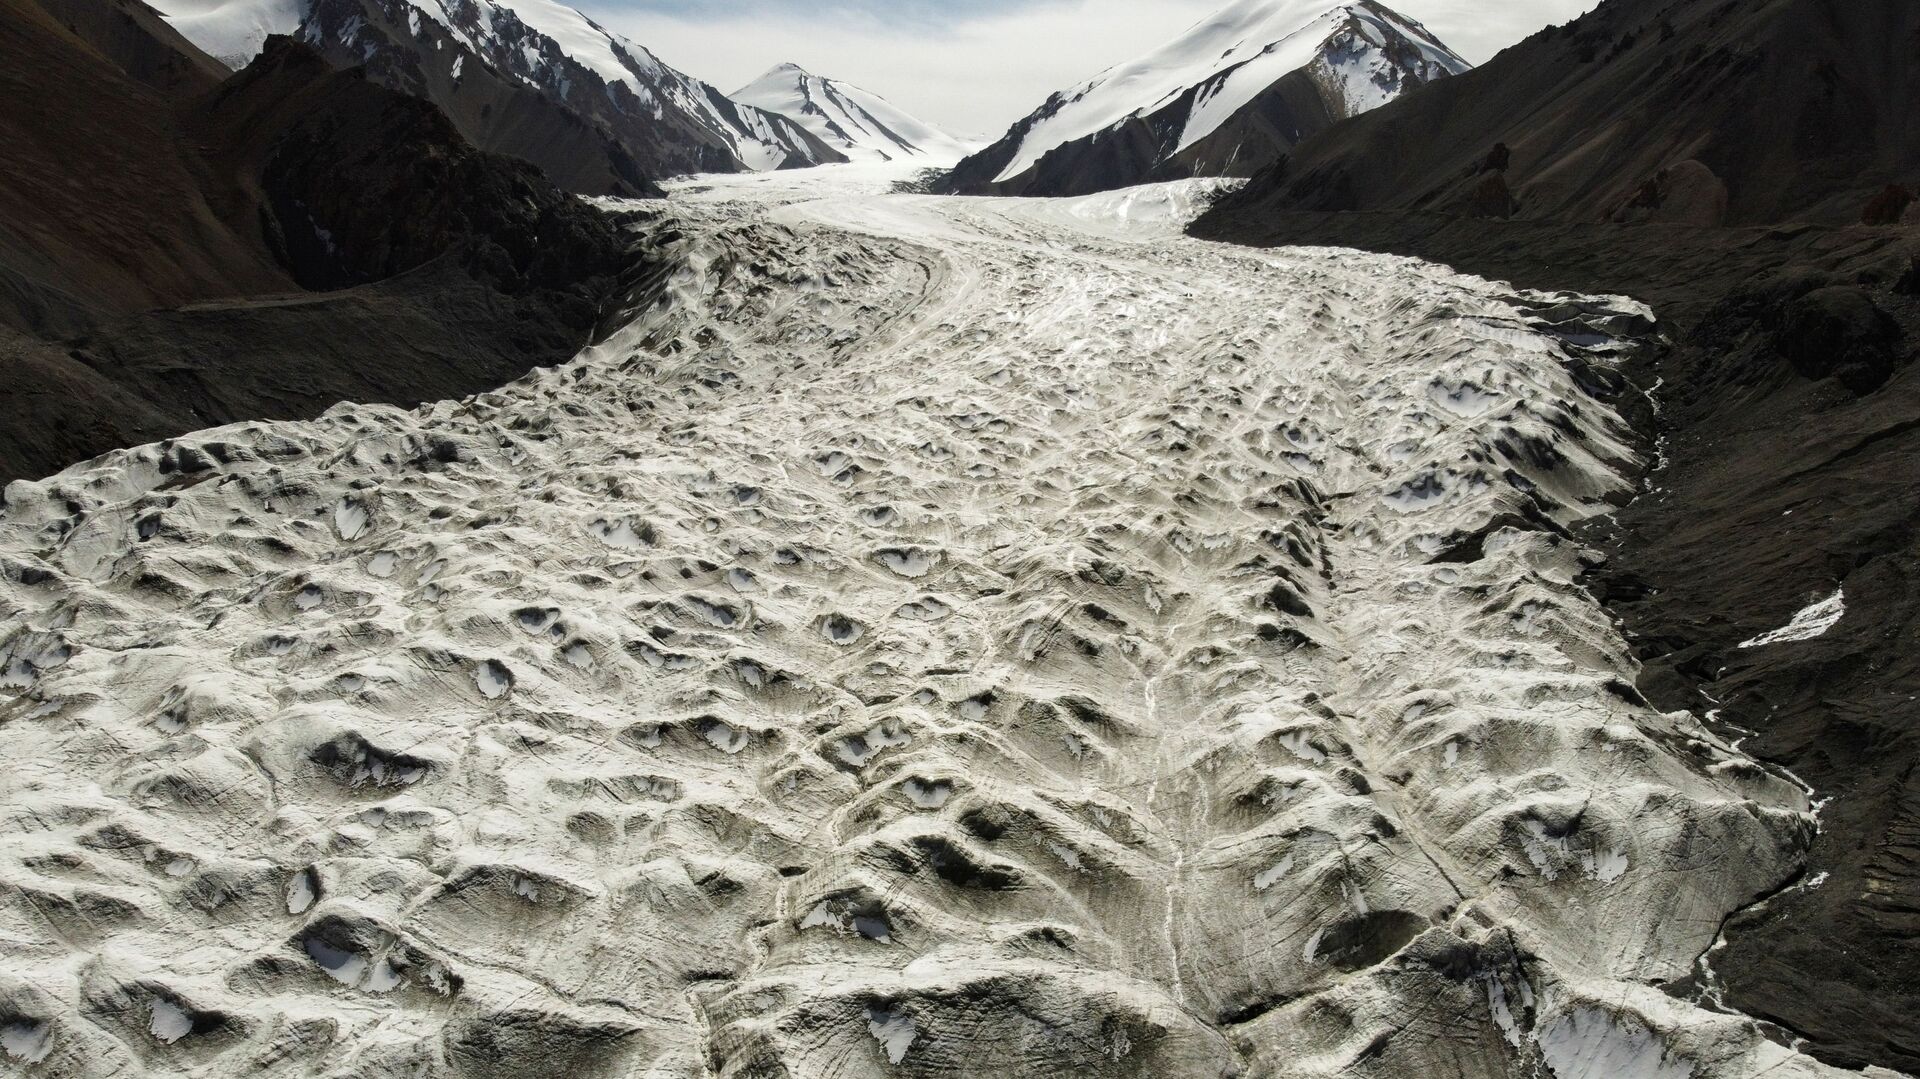 Потоки талой воды с ледника Лаохугоу № 12 в горах Цилянь в провинции Ганьсу, Китай - Sputnik Таджикистан, 1920, 15.05.2021